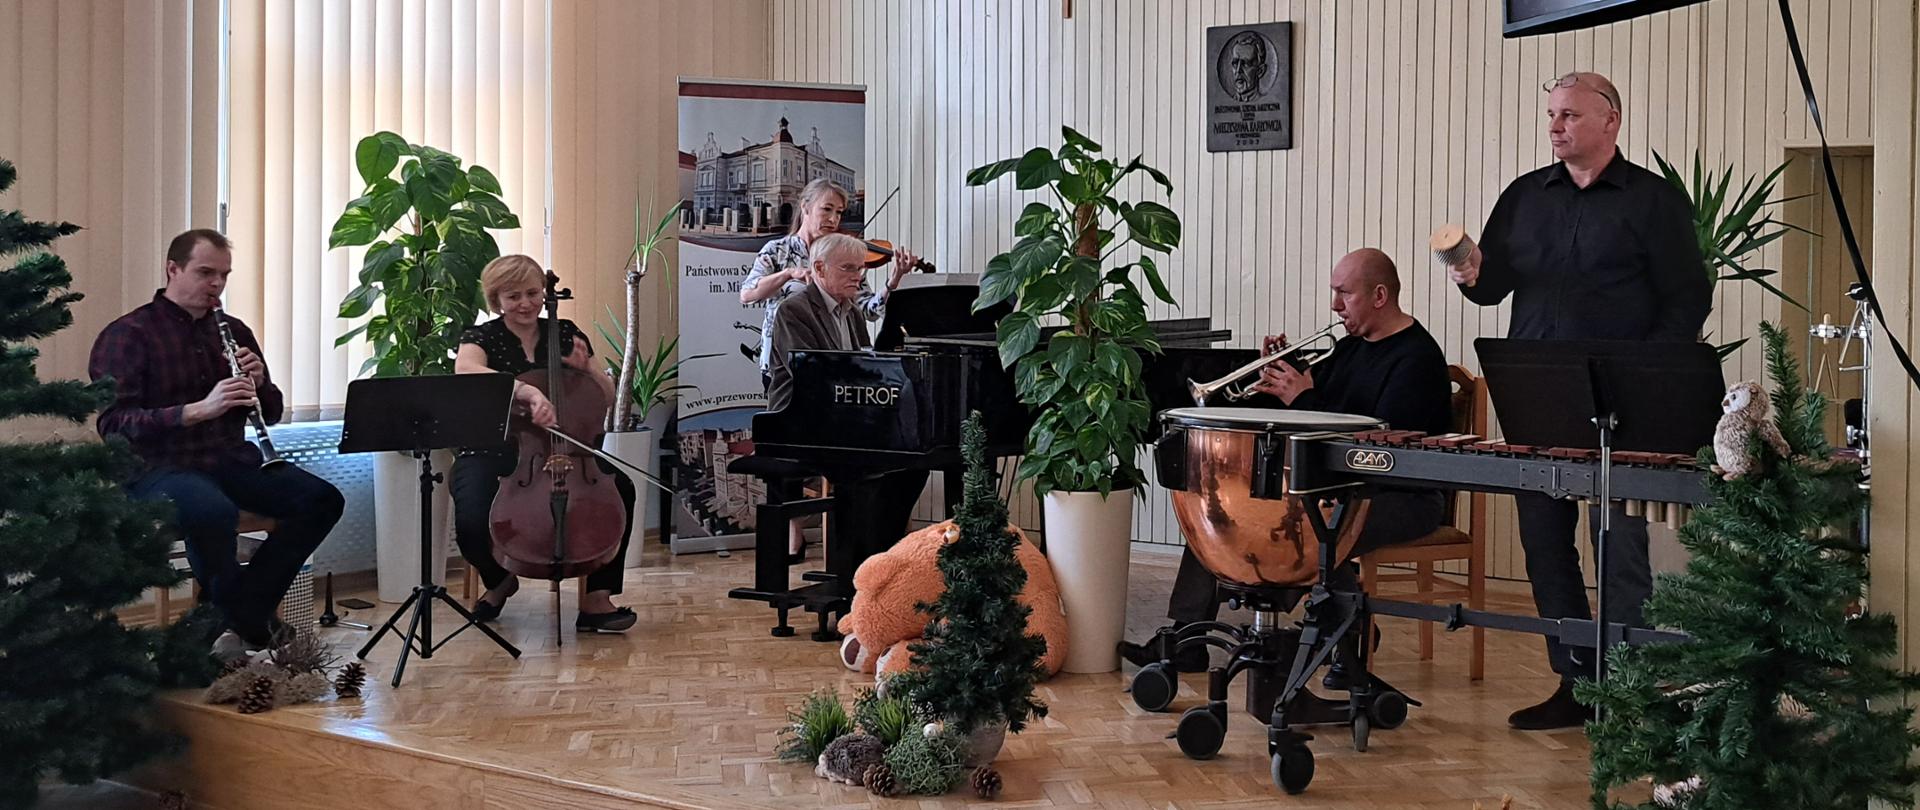 Na scenie od lewej: klarnecista, wiolonczelistka, skrzypaczka, pianista, trębacz, perkusista z kotłami i ksylofonem. Wykonują wspólnie utwór. 